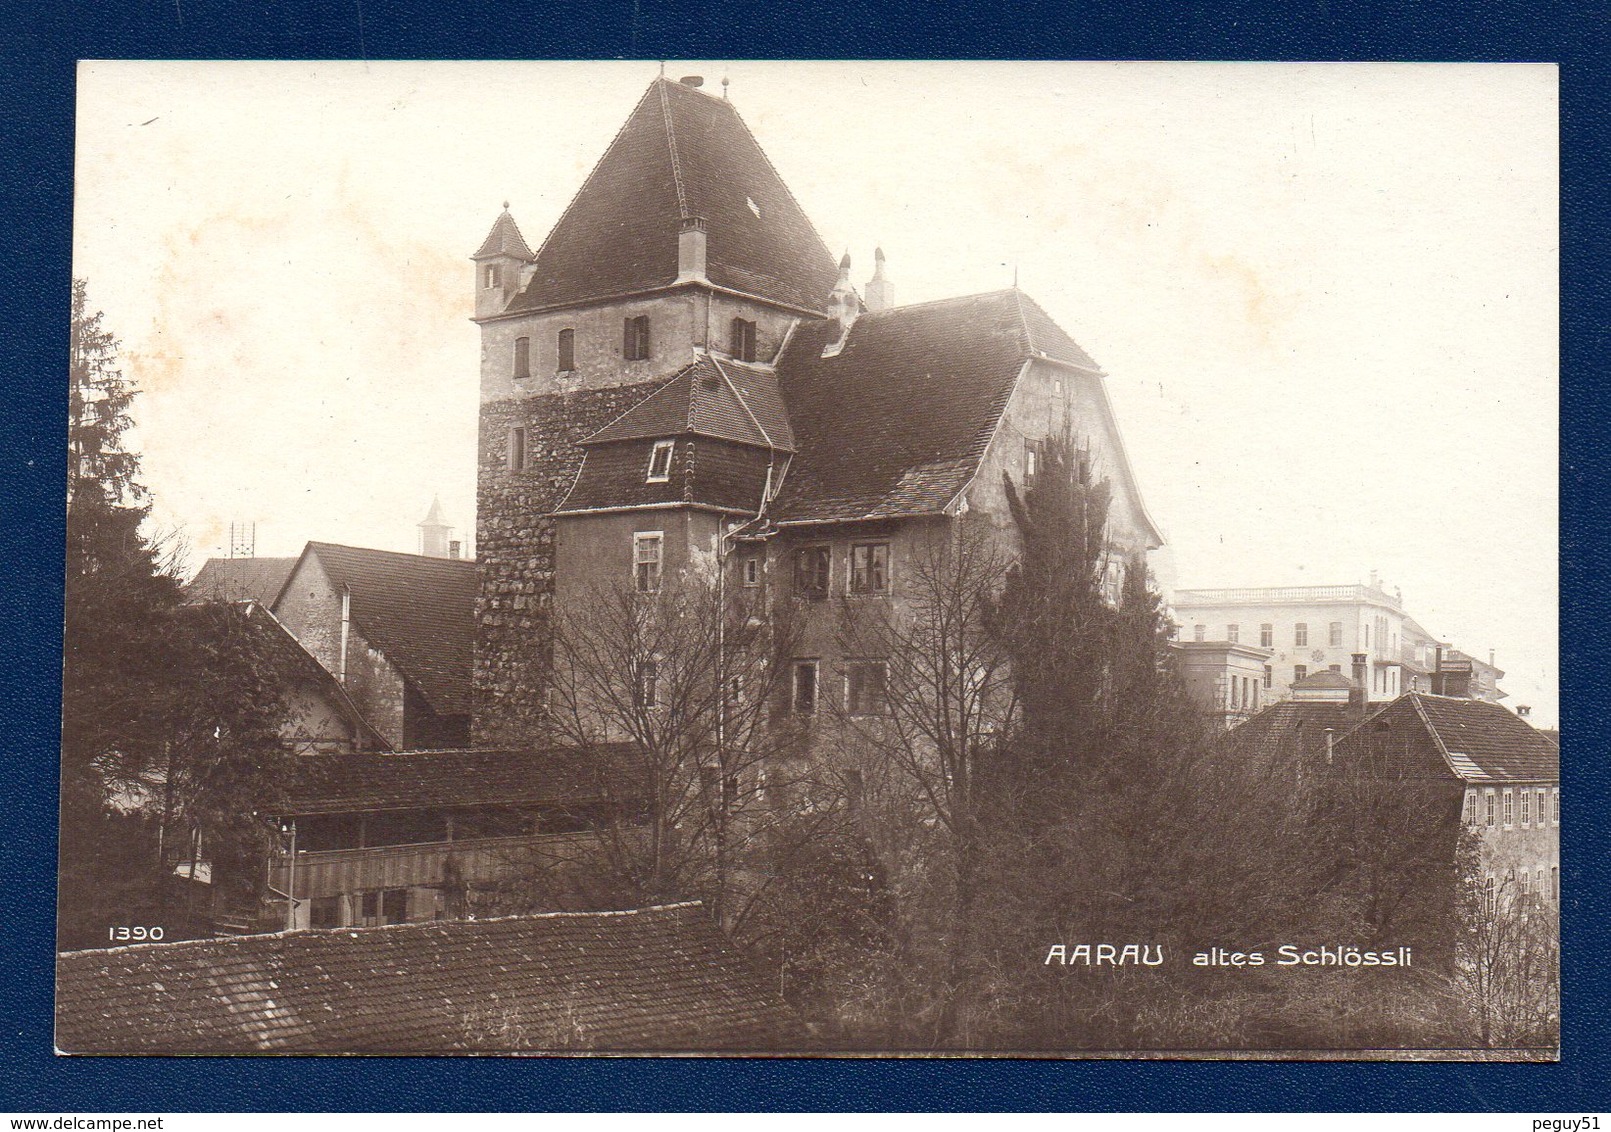 Suisse. Aarau/ Altes Schlössli. Franchise Poste De Campagne 22.  Comp. Art. à Pied LW.  Novembre 1917 - Dokumente